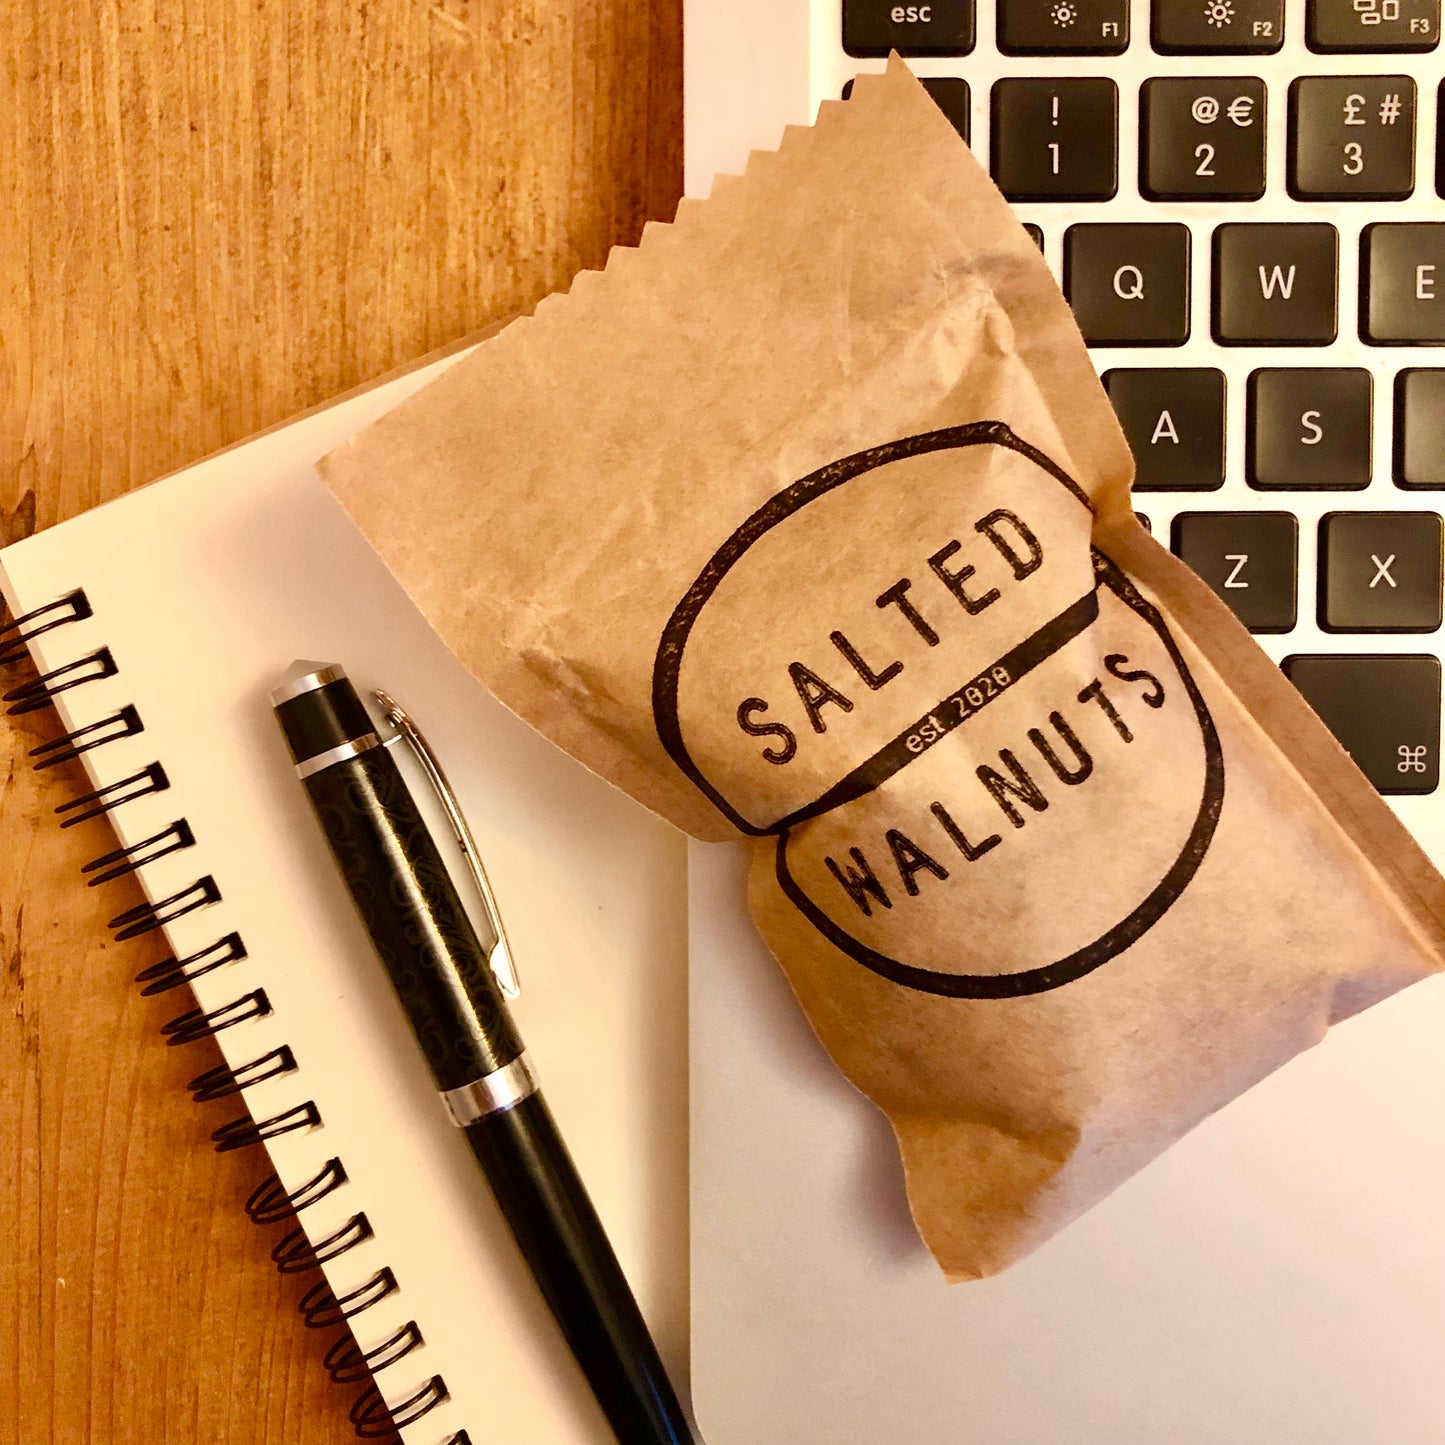 Saltedwalnuts.com - Salted Walnuts 50g